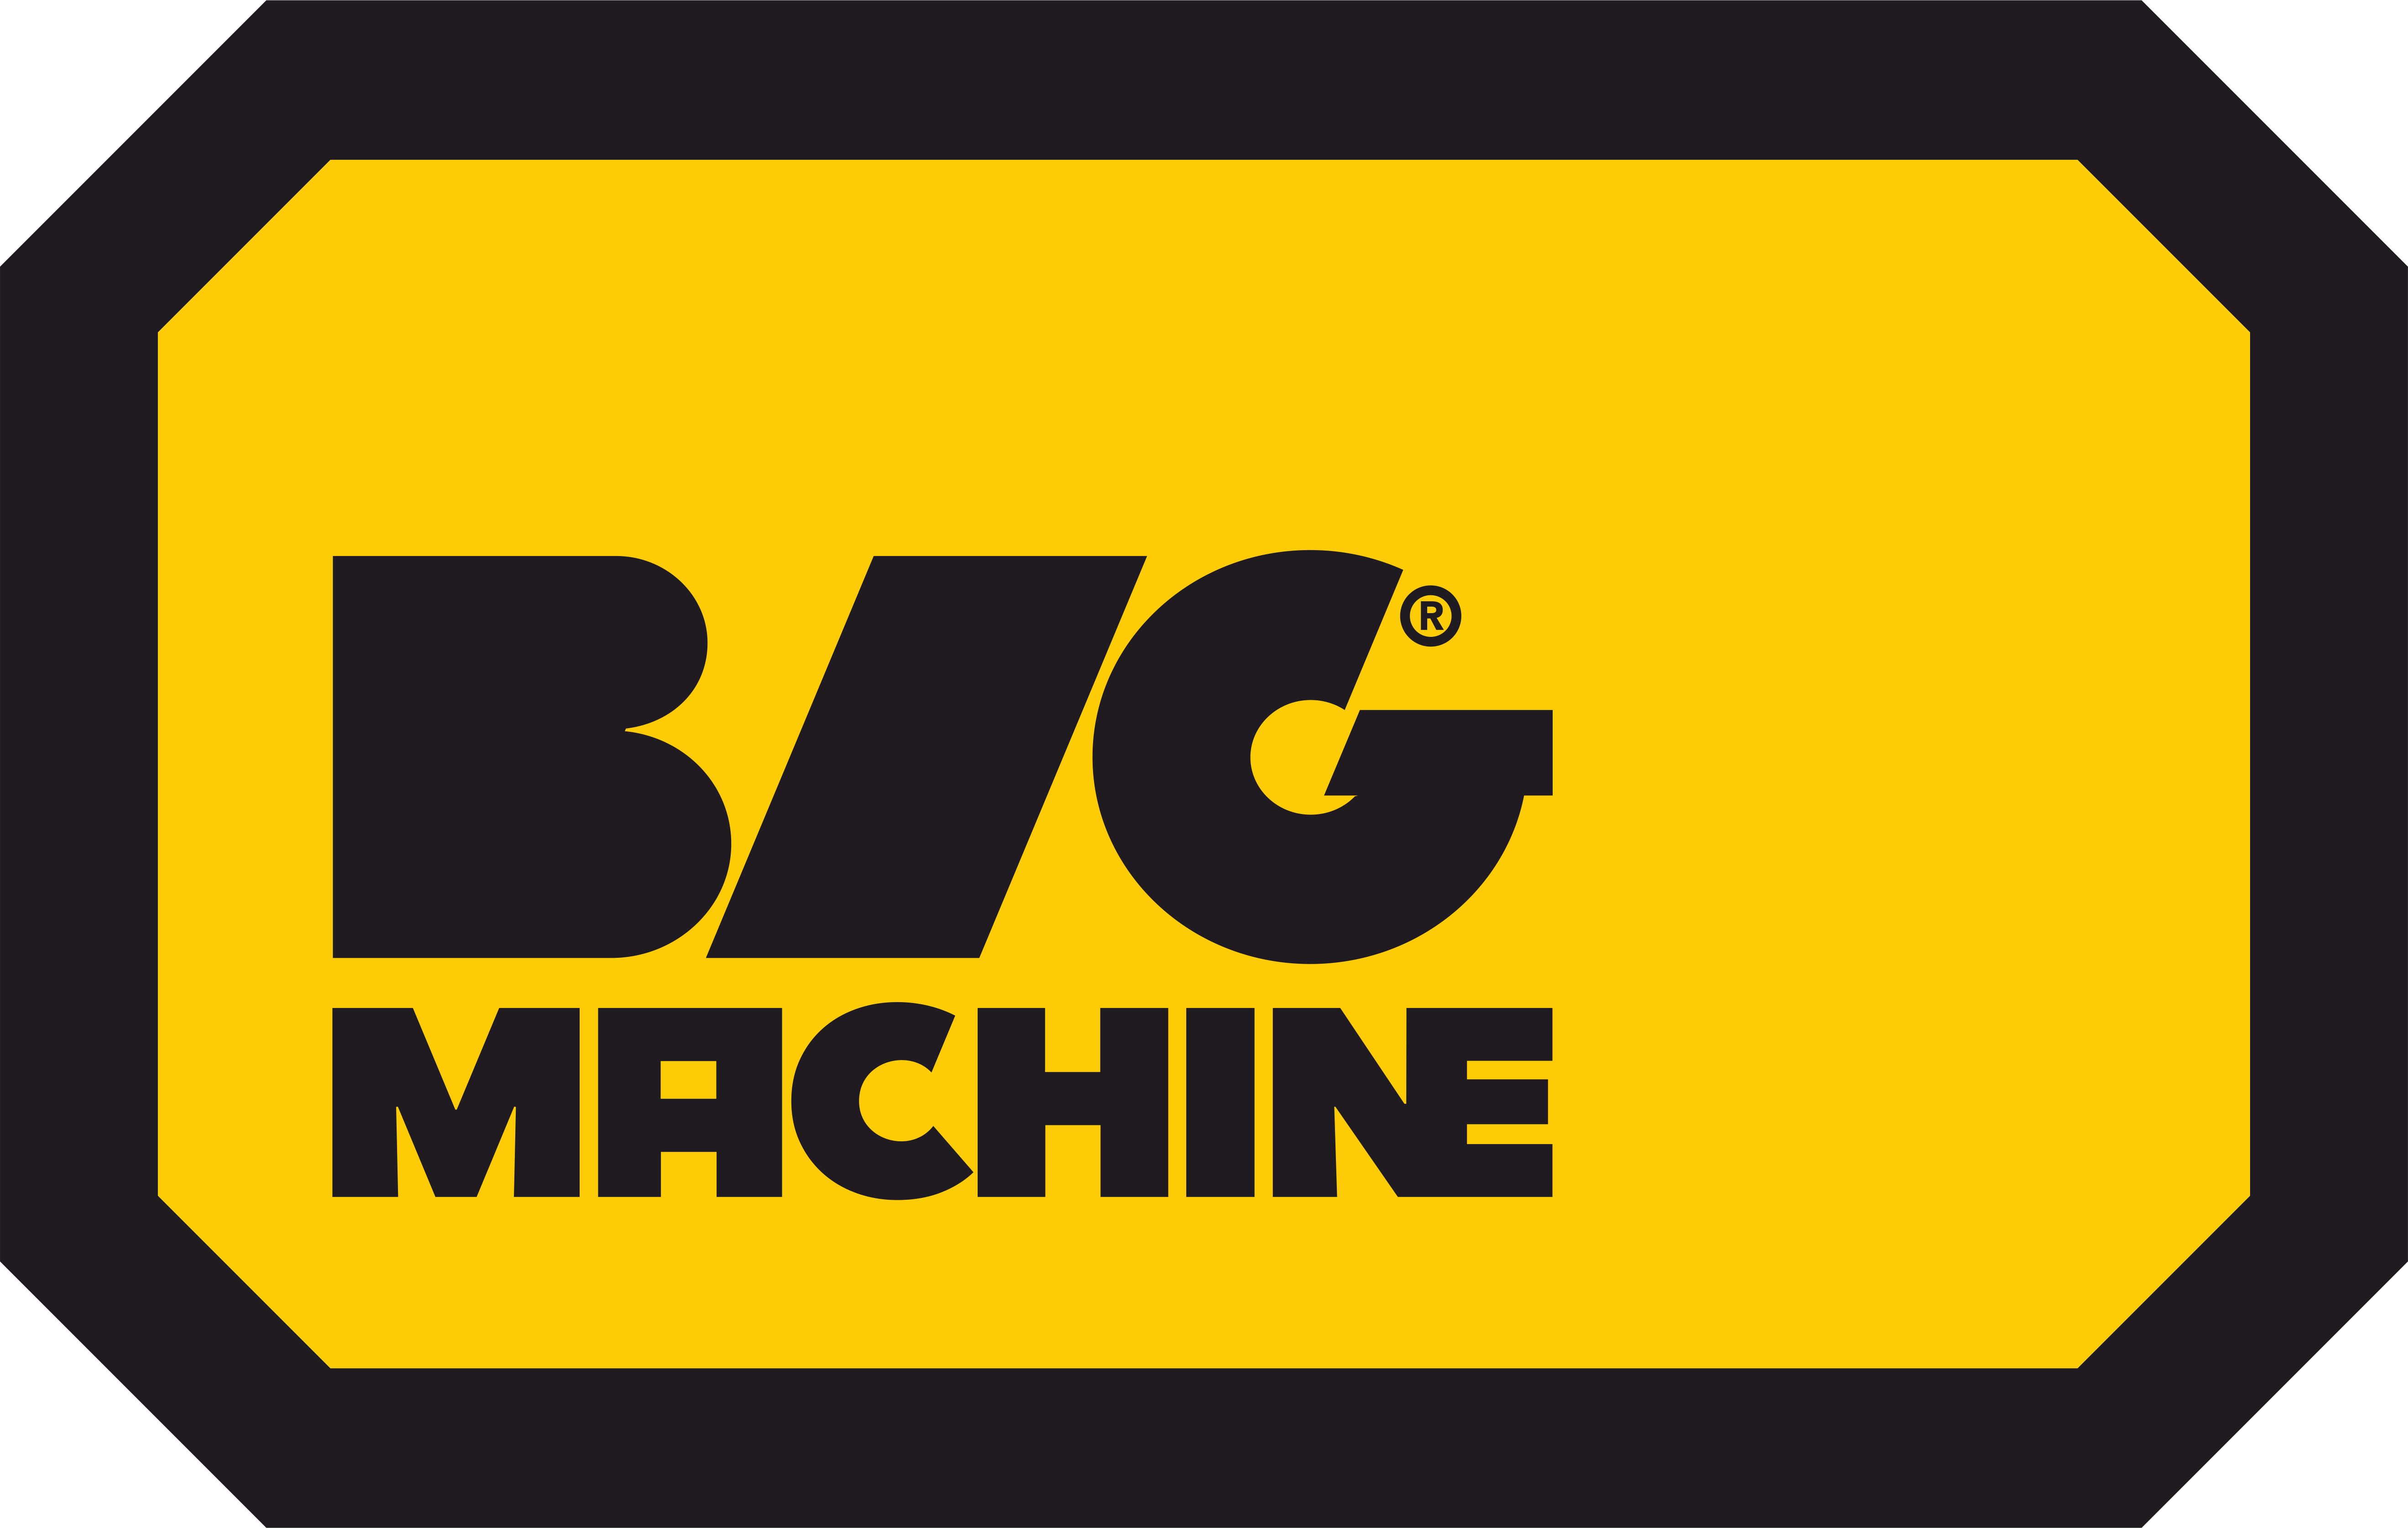 BIG MACHINE